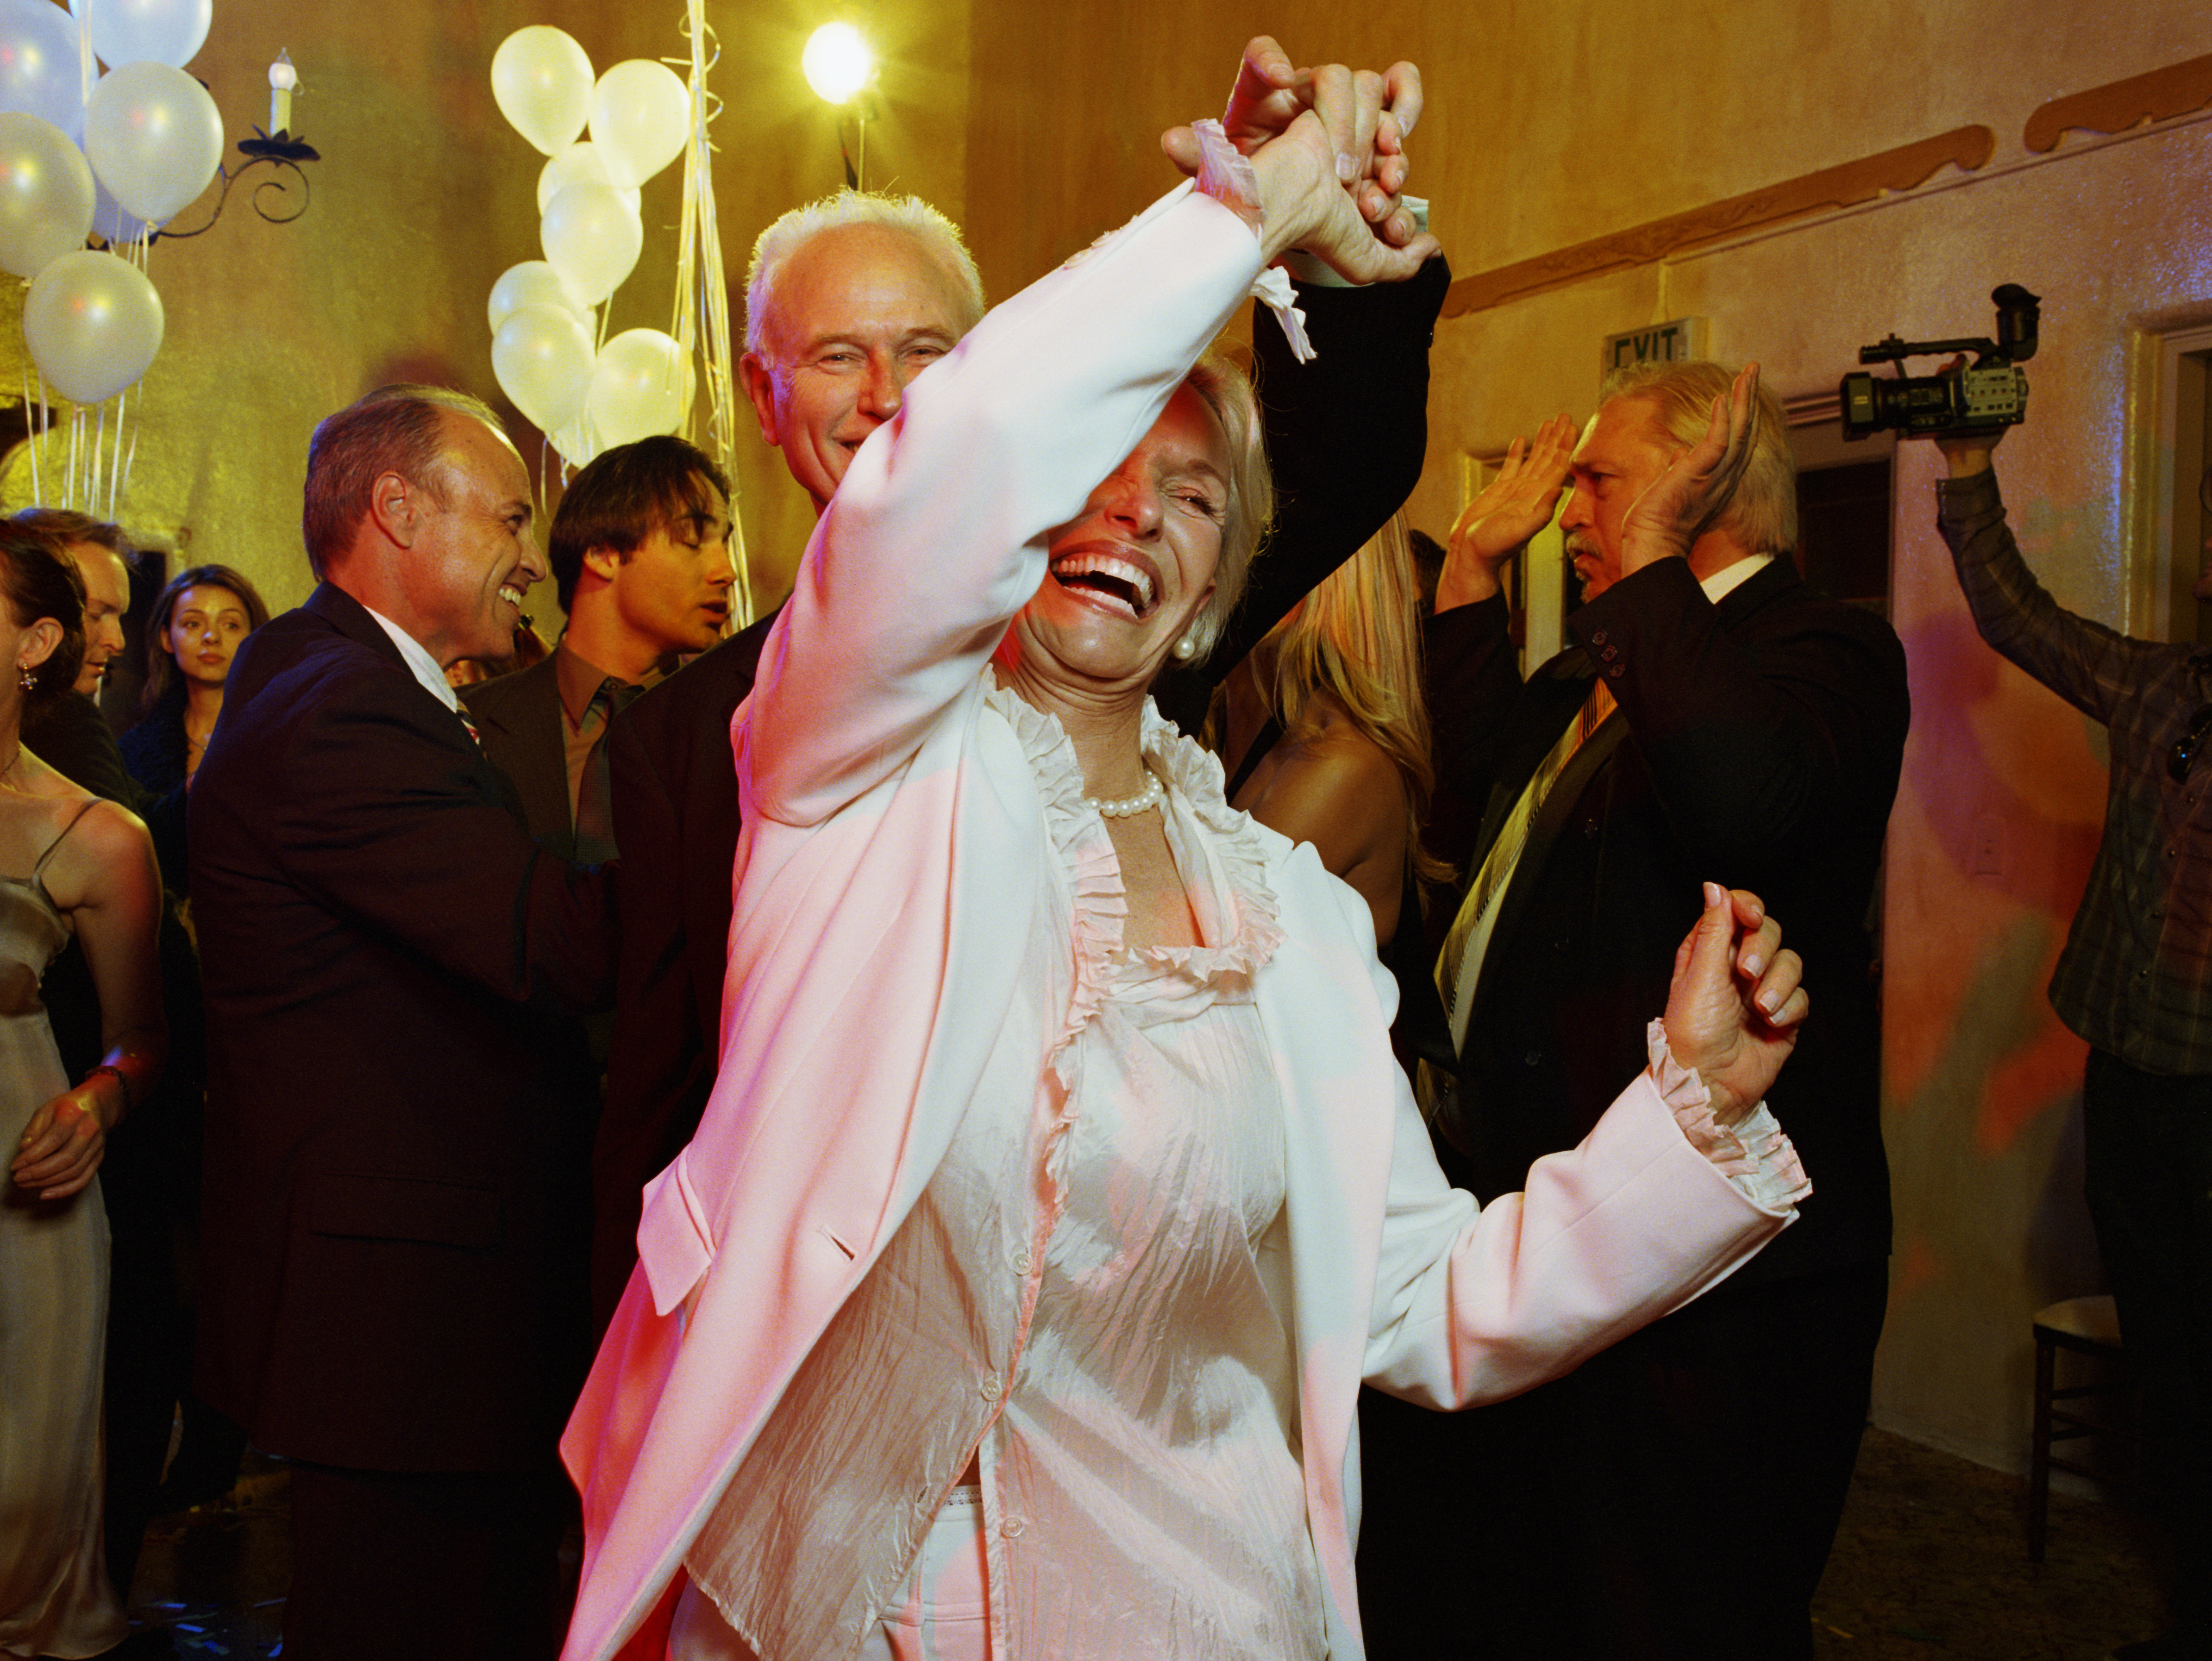 Une femme dansant lors d'une fête | Source : Getty Images